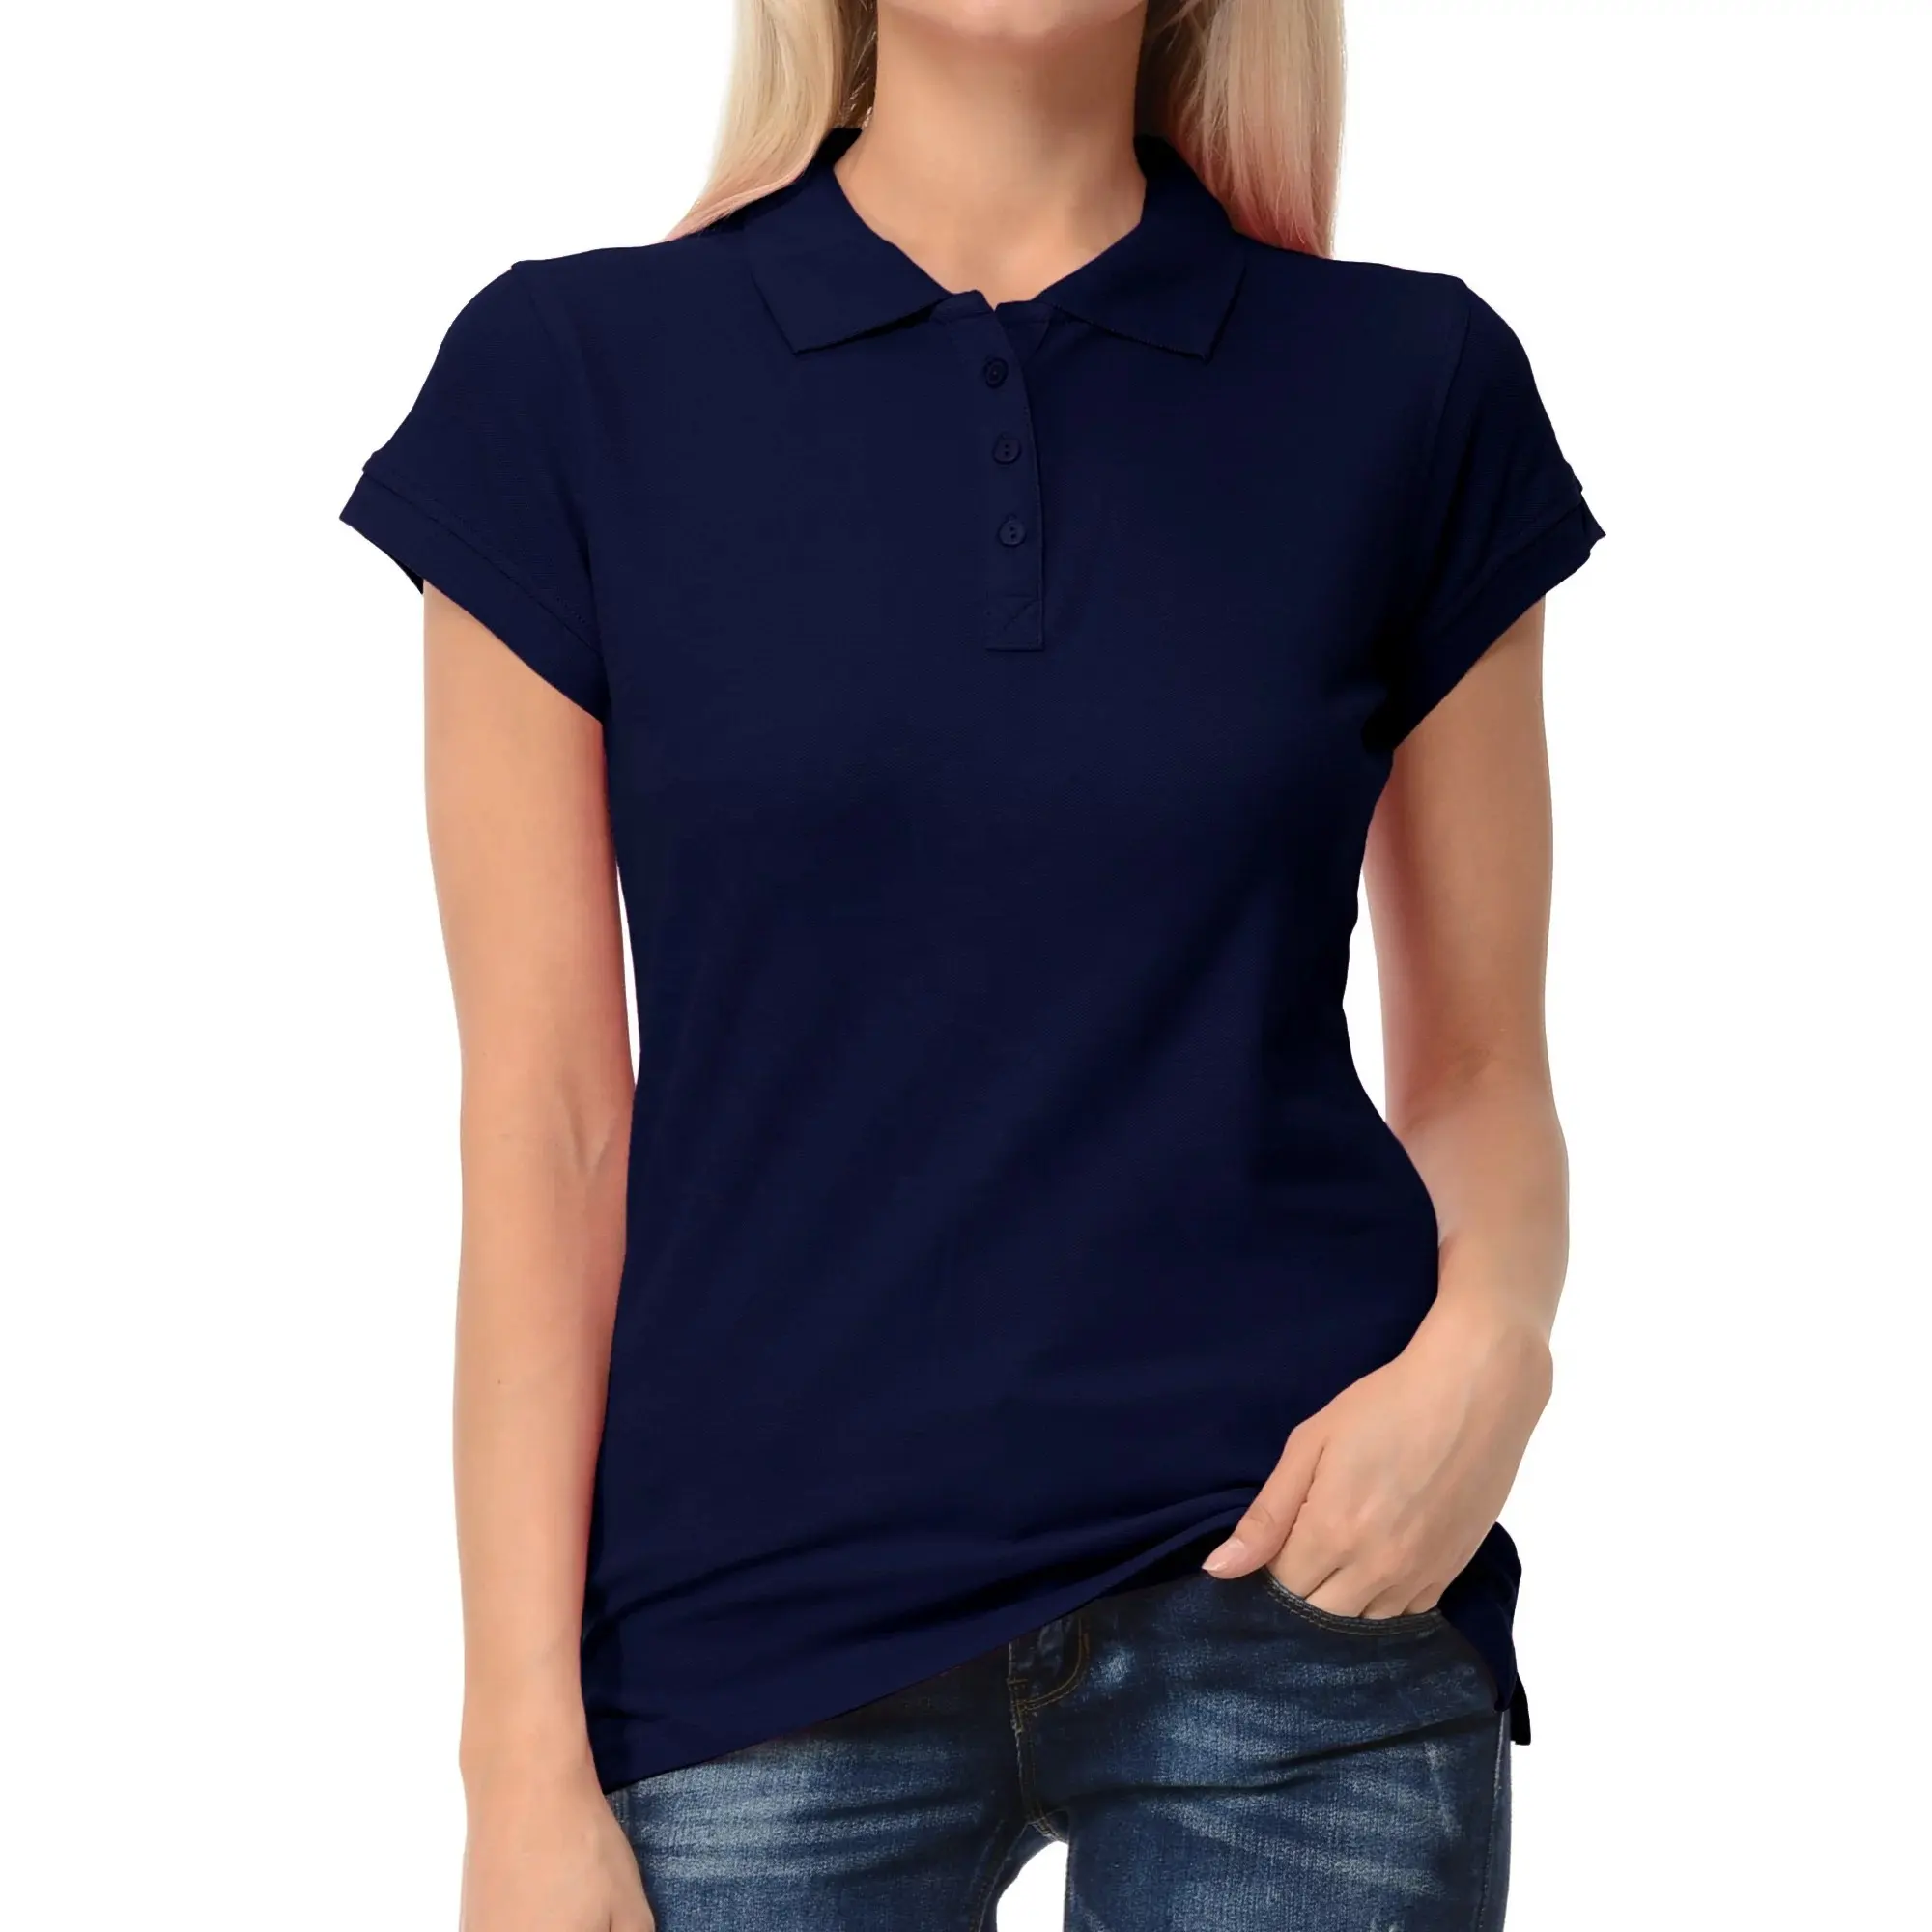 Logotipo de impresión bordado personalizado liso 100% algodón poliéster hombres mujeres uniforme Golf polos camisas